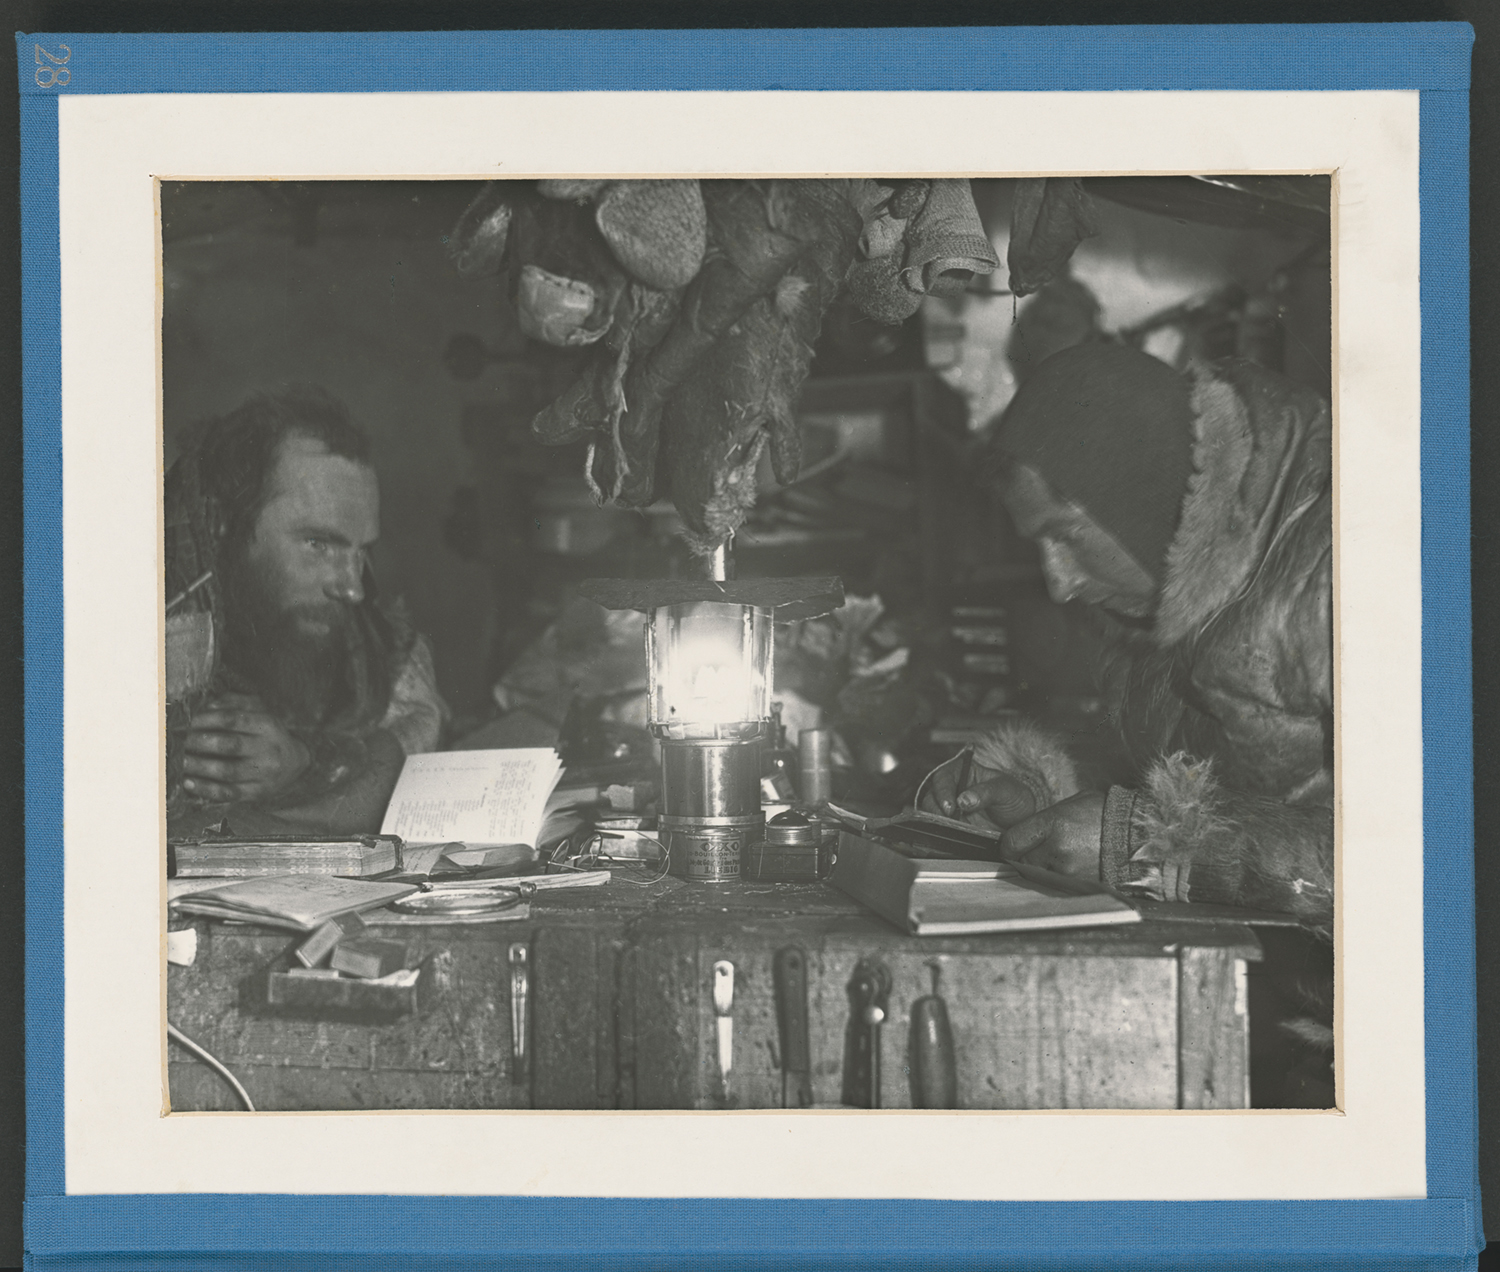 Der wissenschaftliche Arbeitsplatz in der Firnhöhle im Winter 1930/31 (Alfred Wegener Museum CC BY-NC-SA)